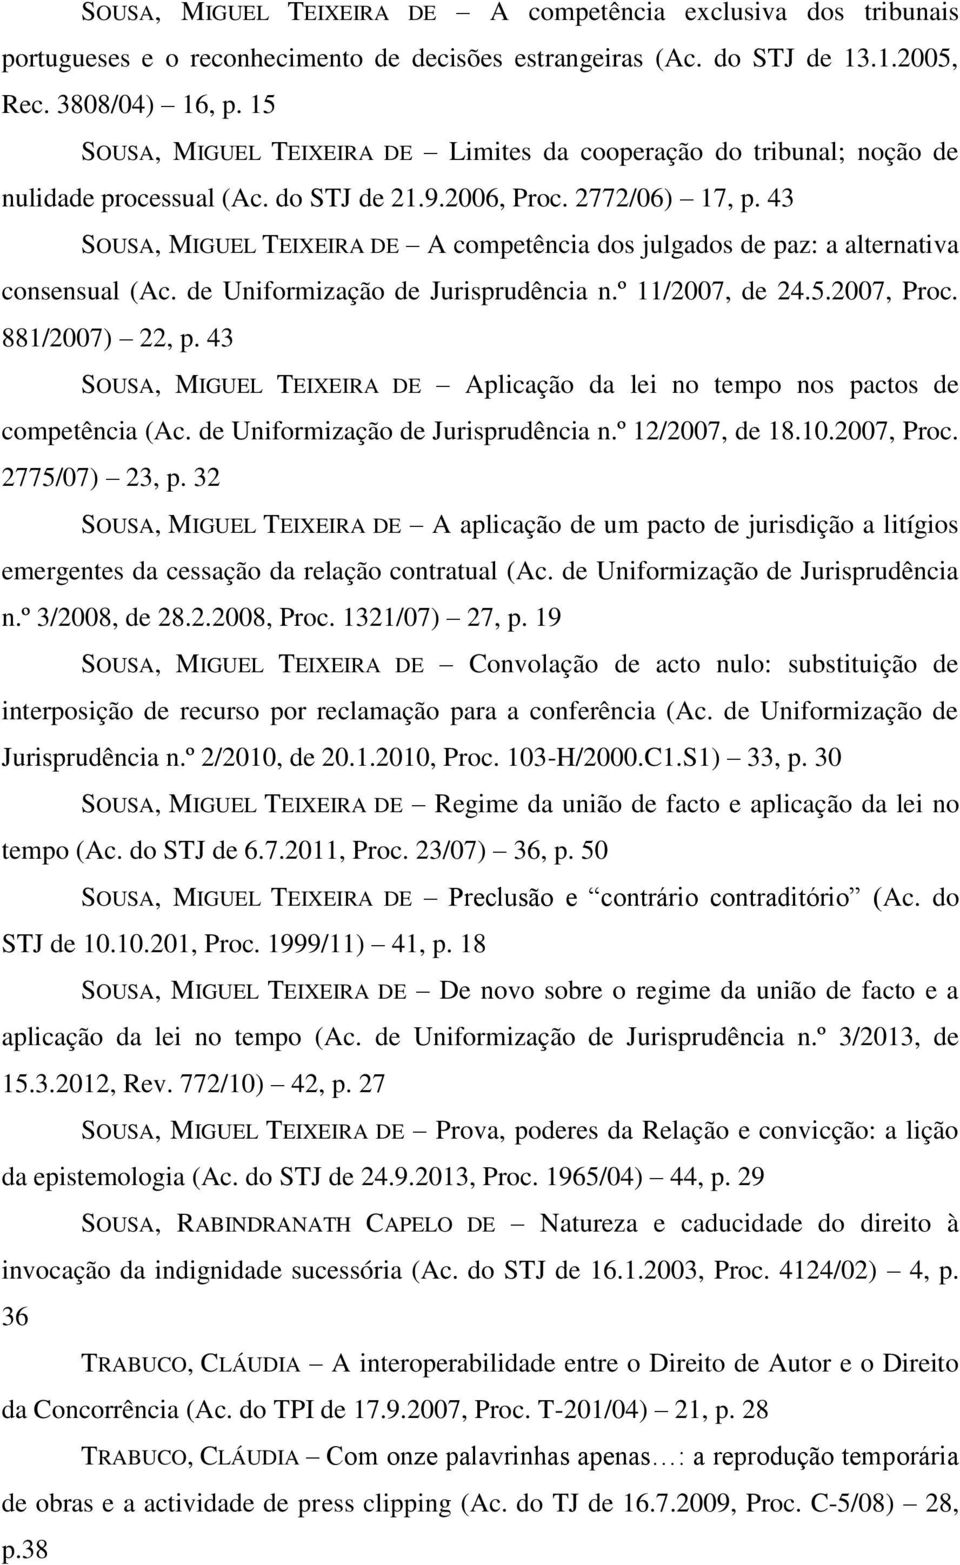 43 SOUSA, MIGUEL TEIXEIRA DE A competência dos julgados de paz: a alternativa consensual (Ac. de Uniformização de Jurisprudência n.º 11/2007, de 24.5.2007, Proc. 881/2007) 22, p.